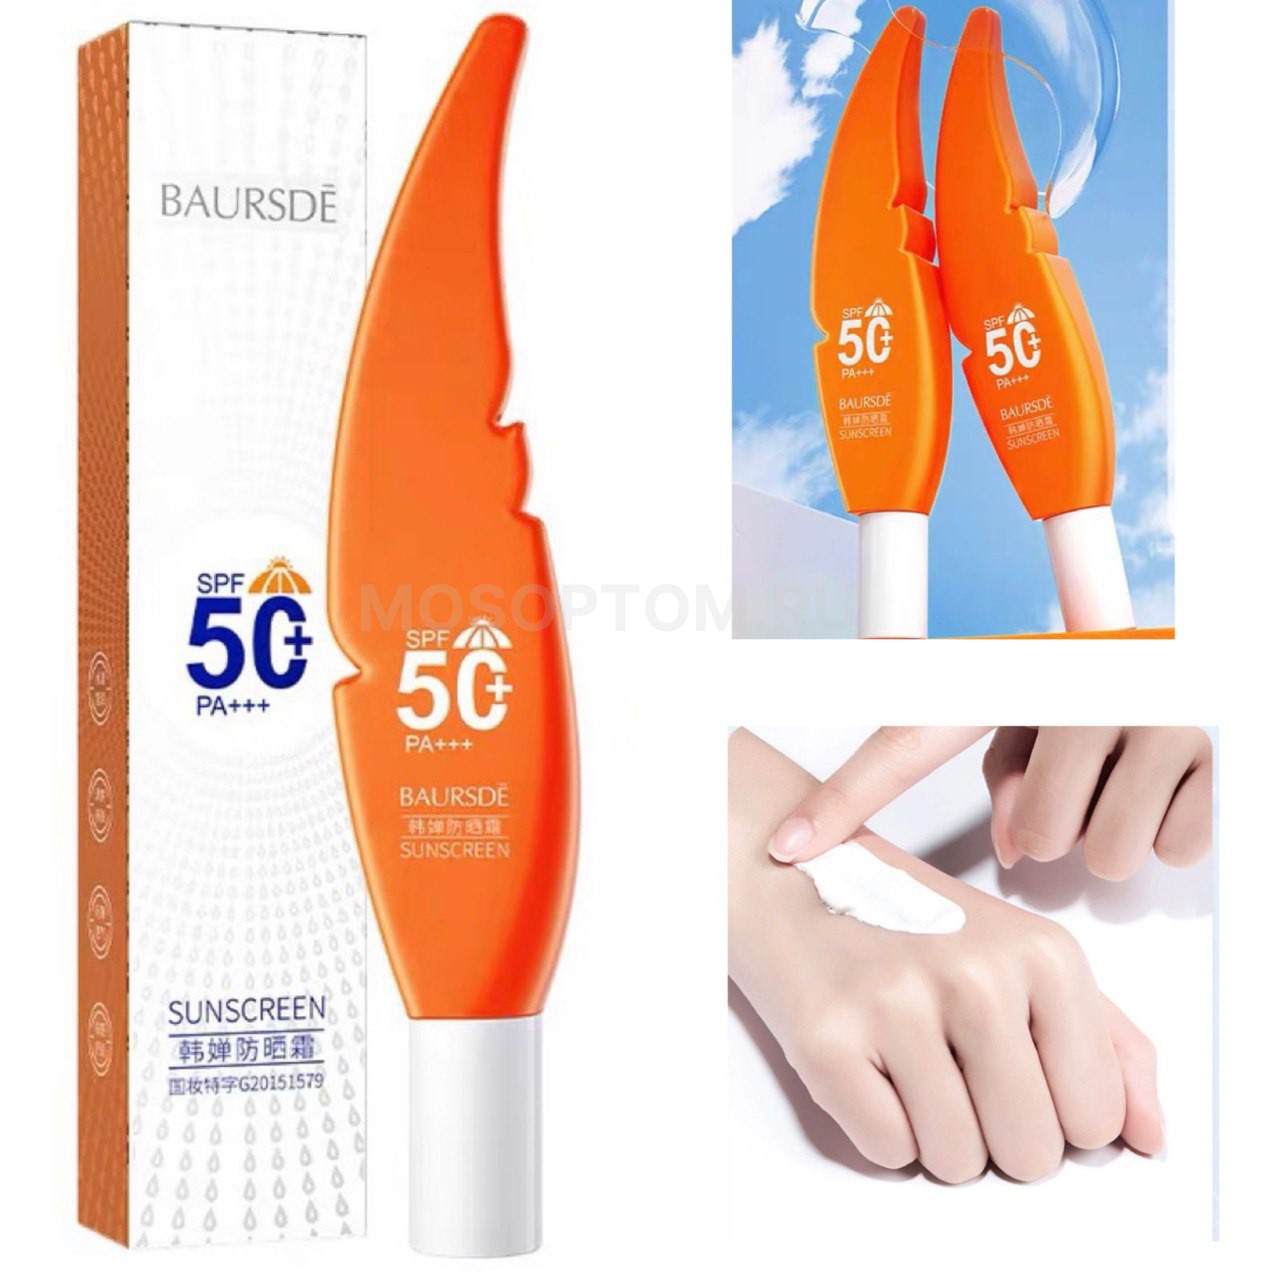 Солнцезащитный крем Baursde Sunscreen SPF 50+ pa +++ оптом